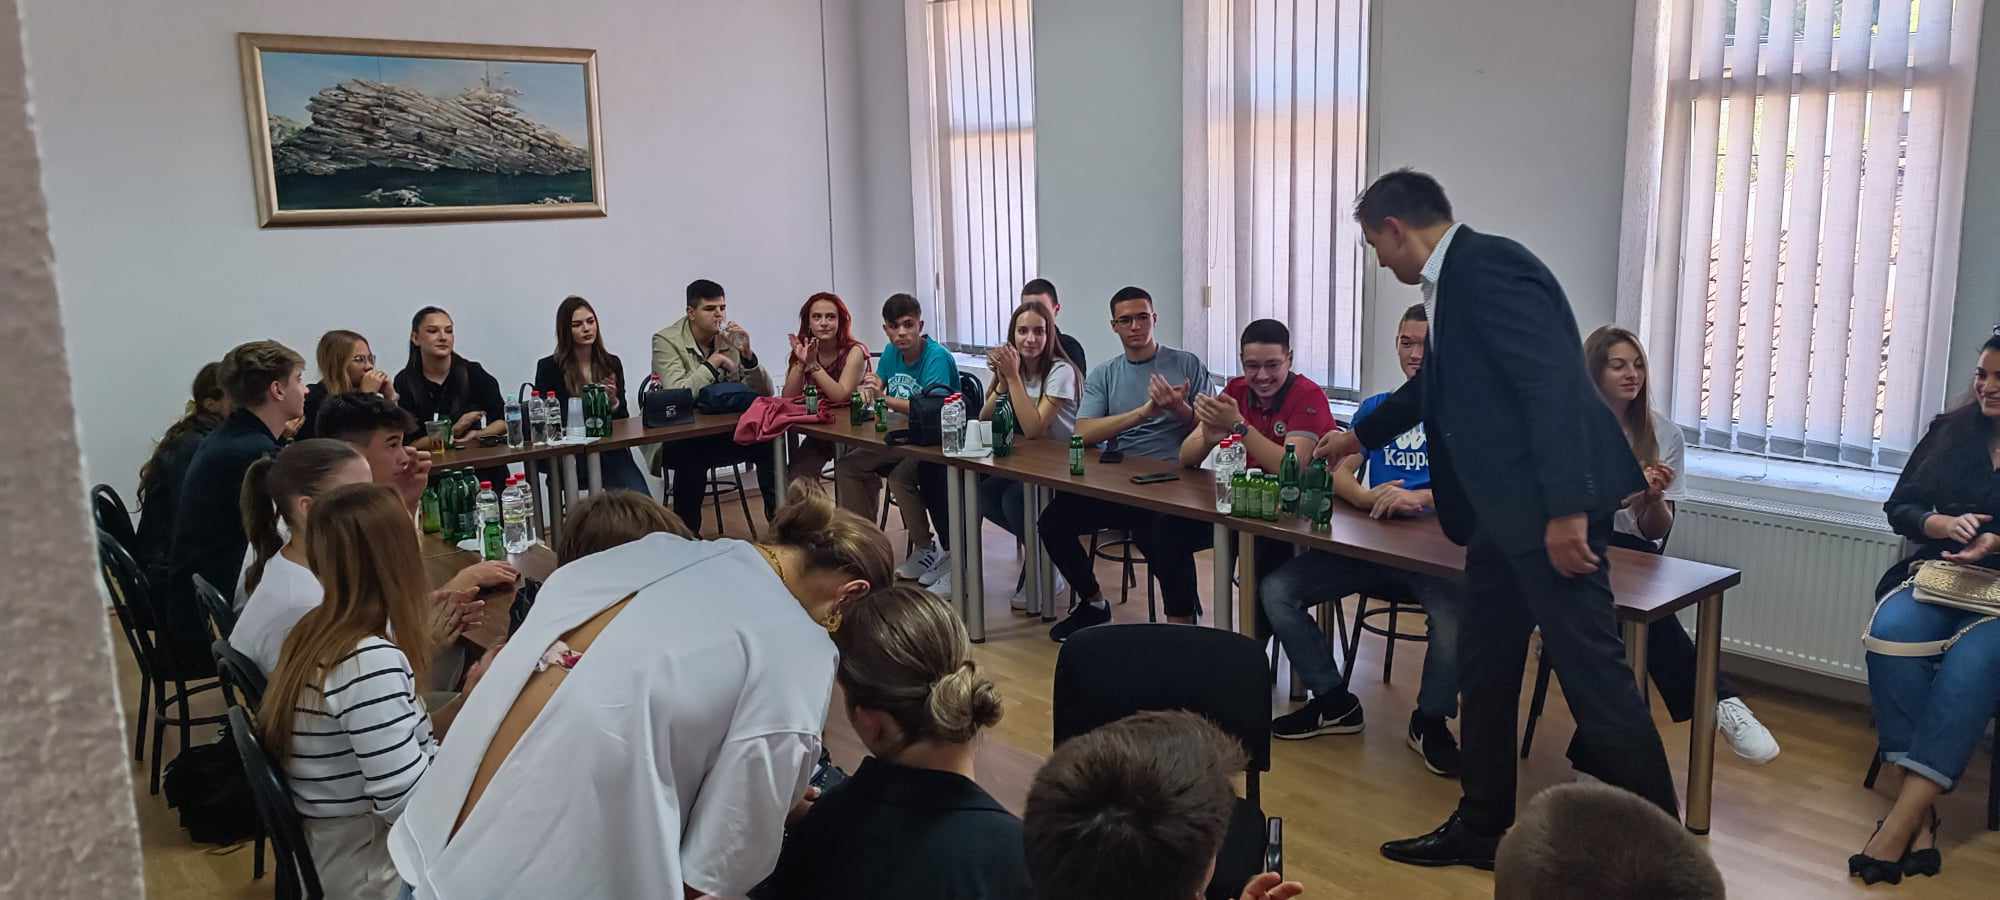 Učenici iz Smederevske Palanke u obilasku kulturno-prirodnih ljepota Kreševa